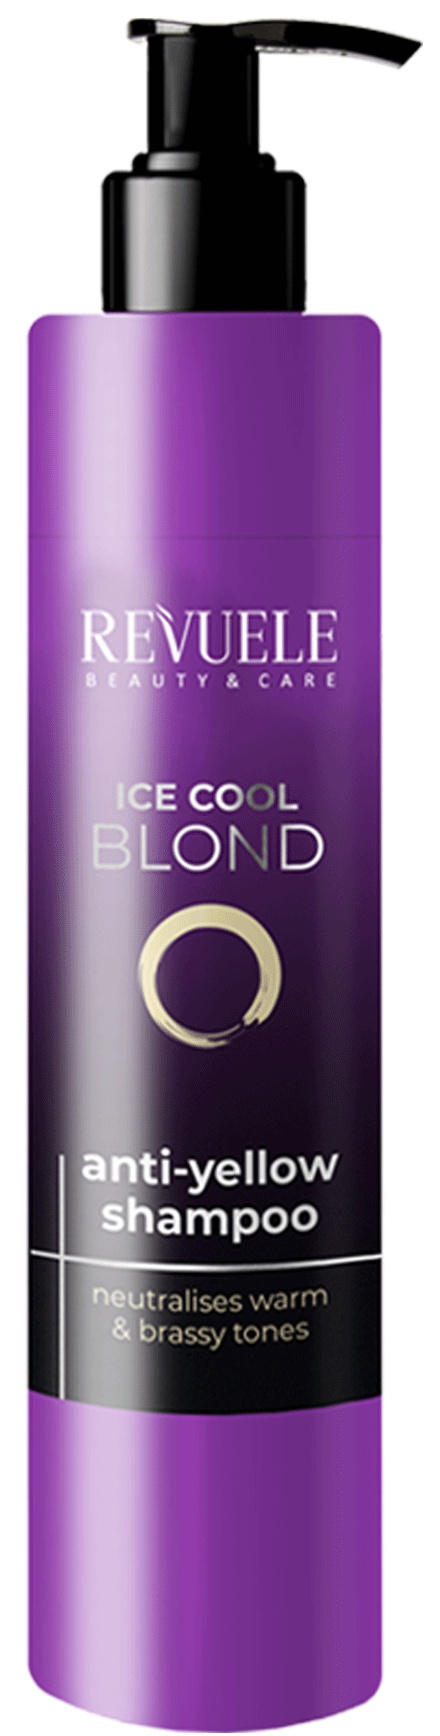 Revuele Ice Cool Blond Anti-Yellow Shampoo